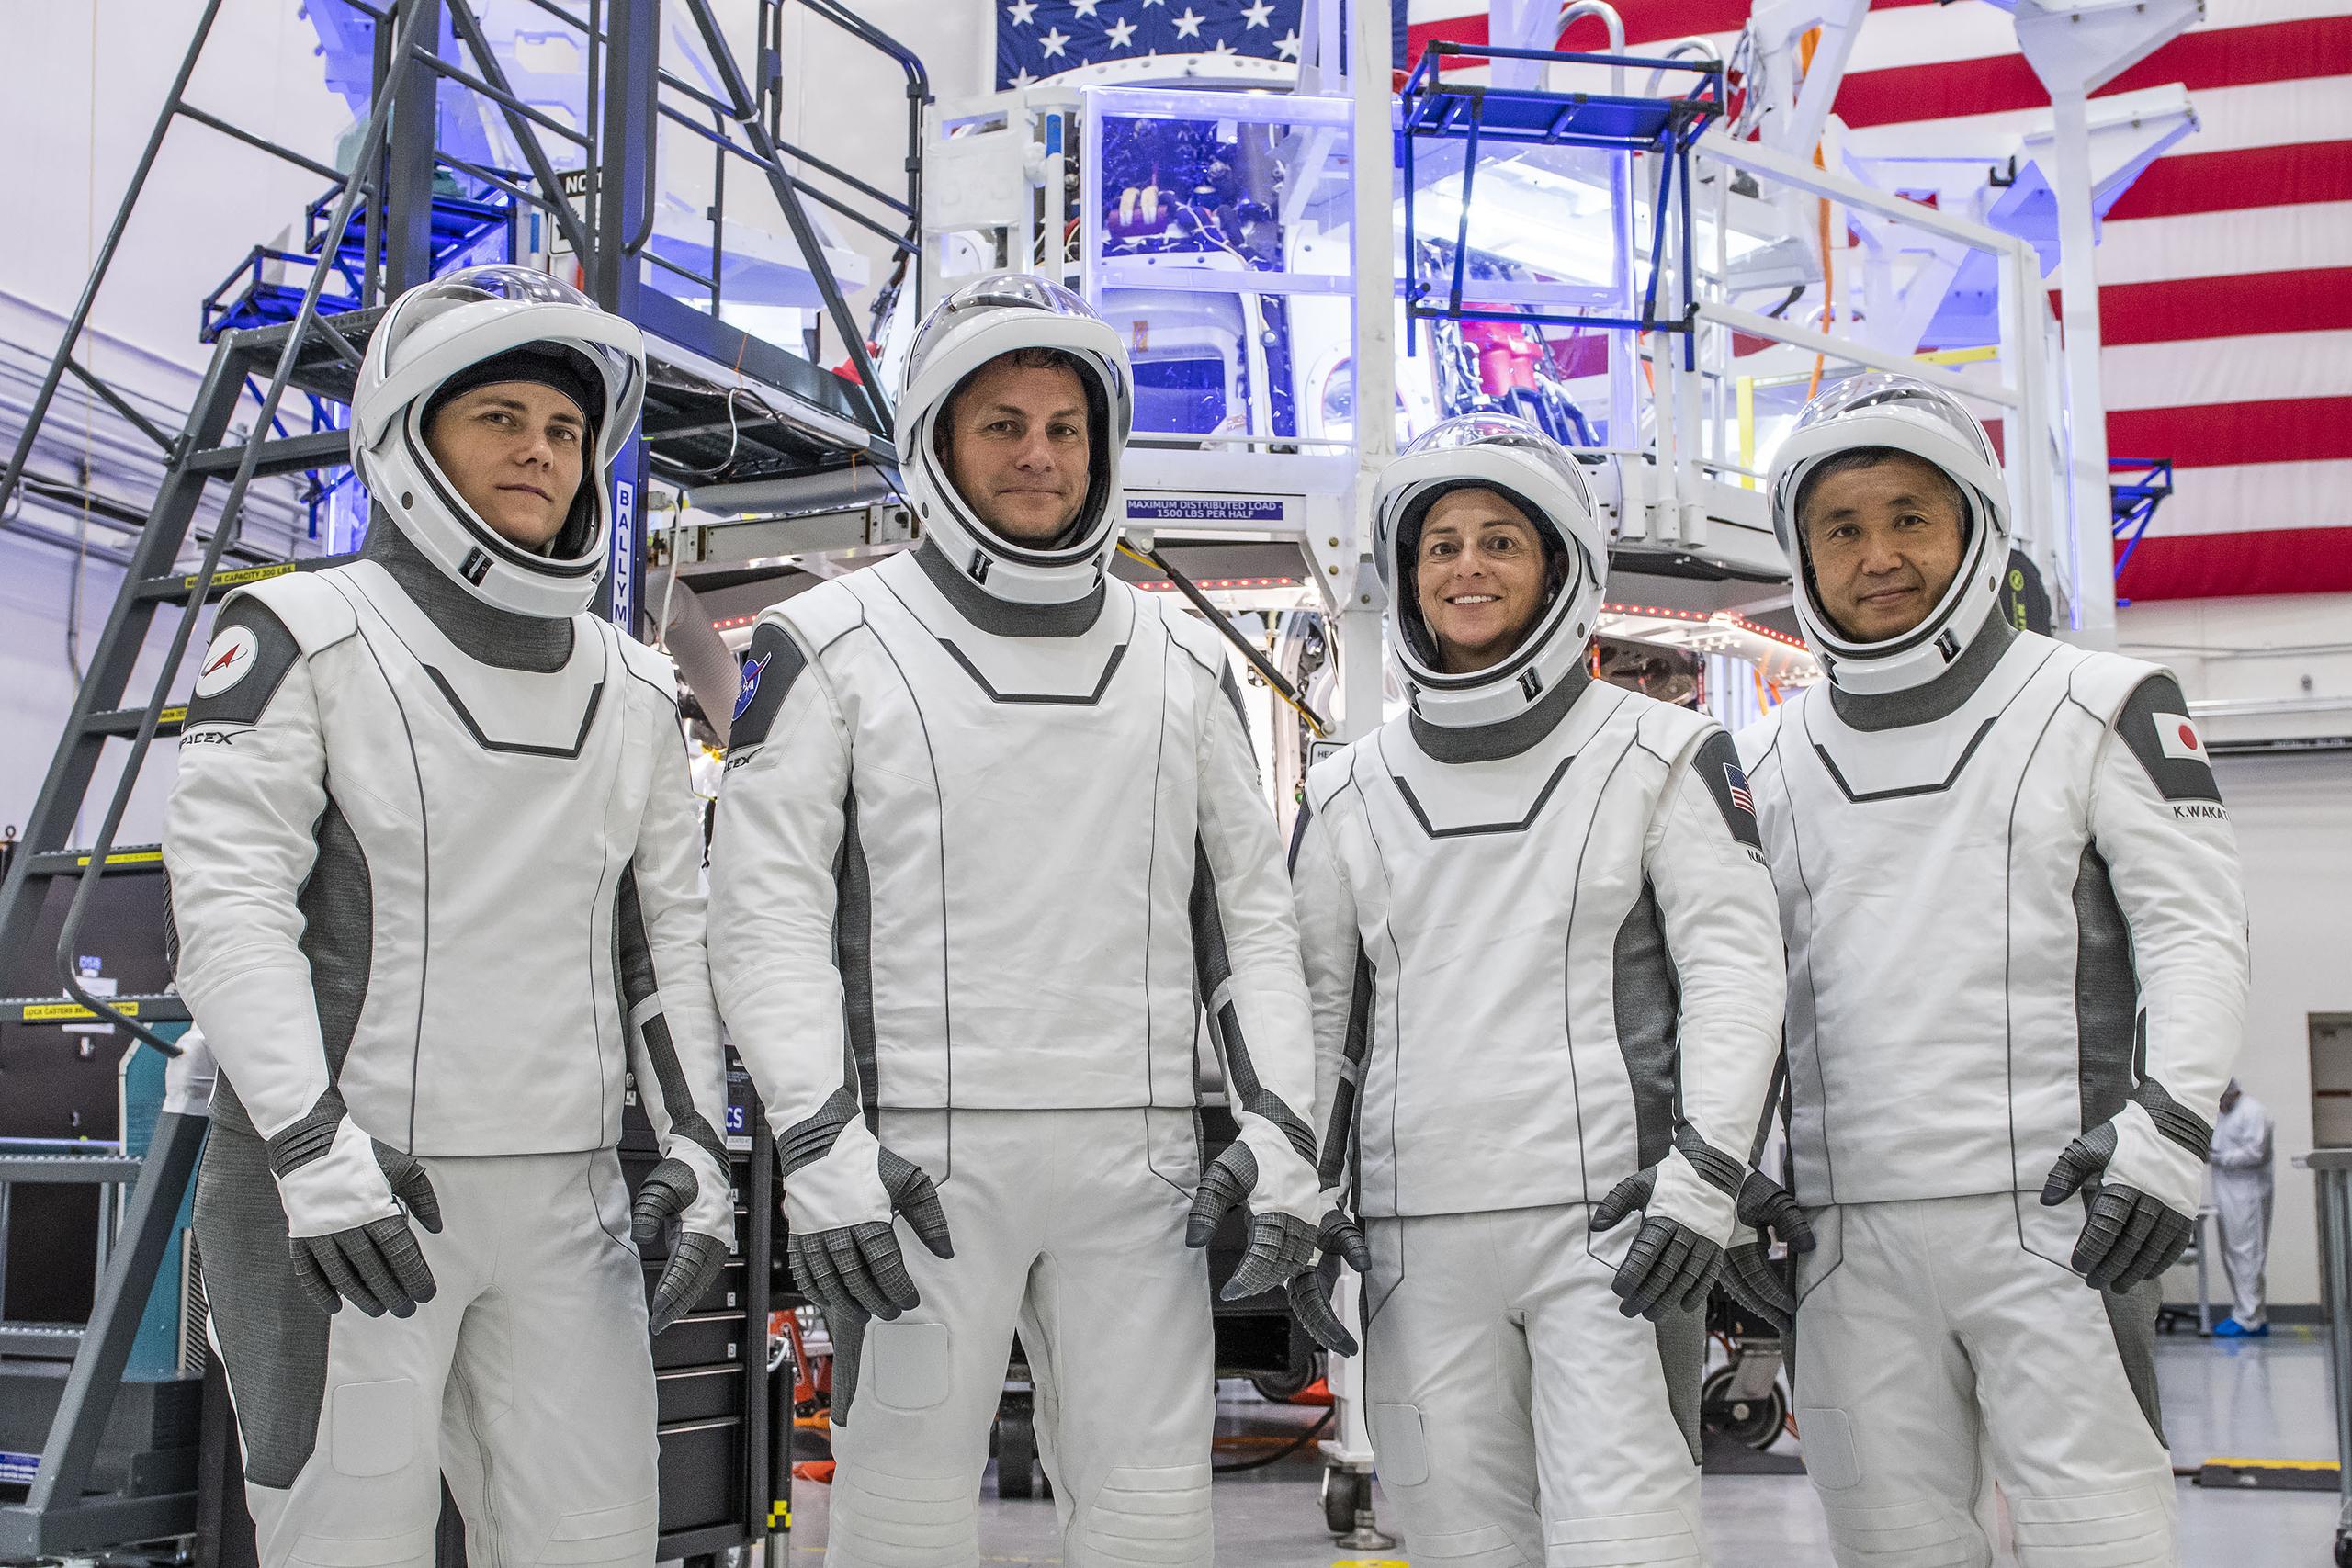 Fotografía fechada el 13 de agosto de 2022 cedida por SpaceX donde aparecen los astronautas de SpaceX Crew-5 (de izq. a dcha.) la especialista de misión, Anna Kikina; el piloto, Josh Cassada; la comandante de la nave espacial, Nicole Mann, y el especialista en misiones de la Agencia de Exploración Aeroespacial de Japón (JAXA), Koichi Wakata, equipados y listos para participar en una prueba de interfaz de equipo de tripulación (CEIT) en la sede de SpaceX en Hawthorne, California. EFE/SpaceX